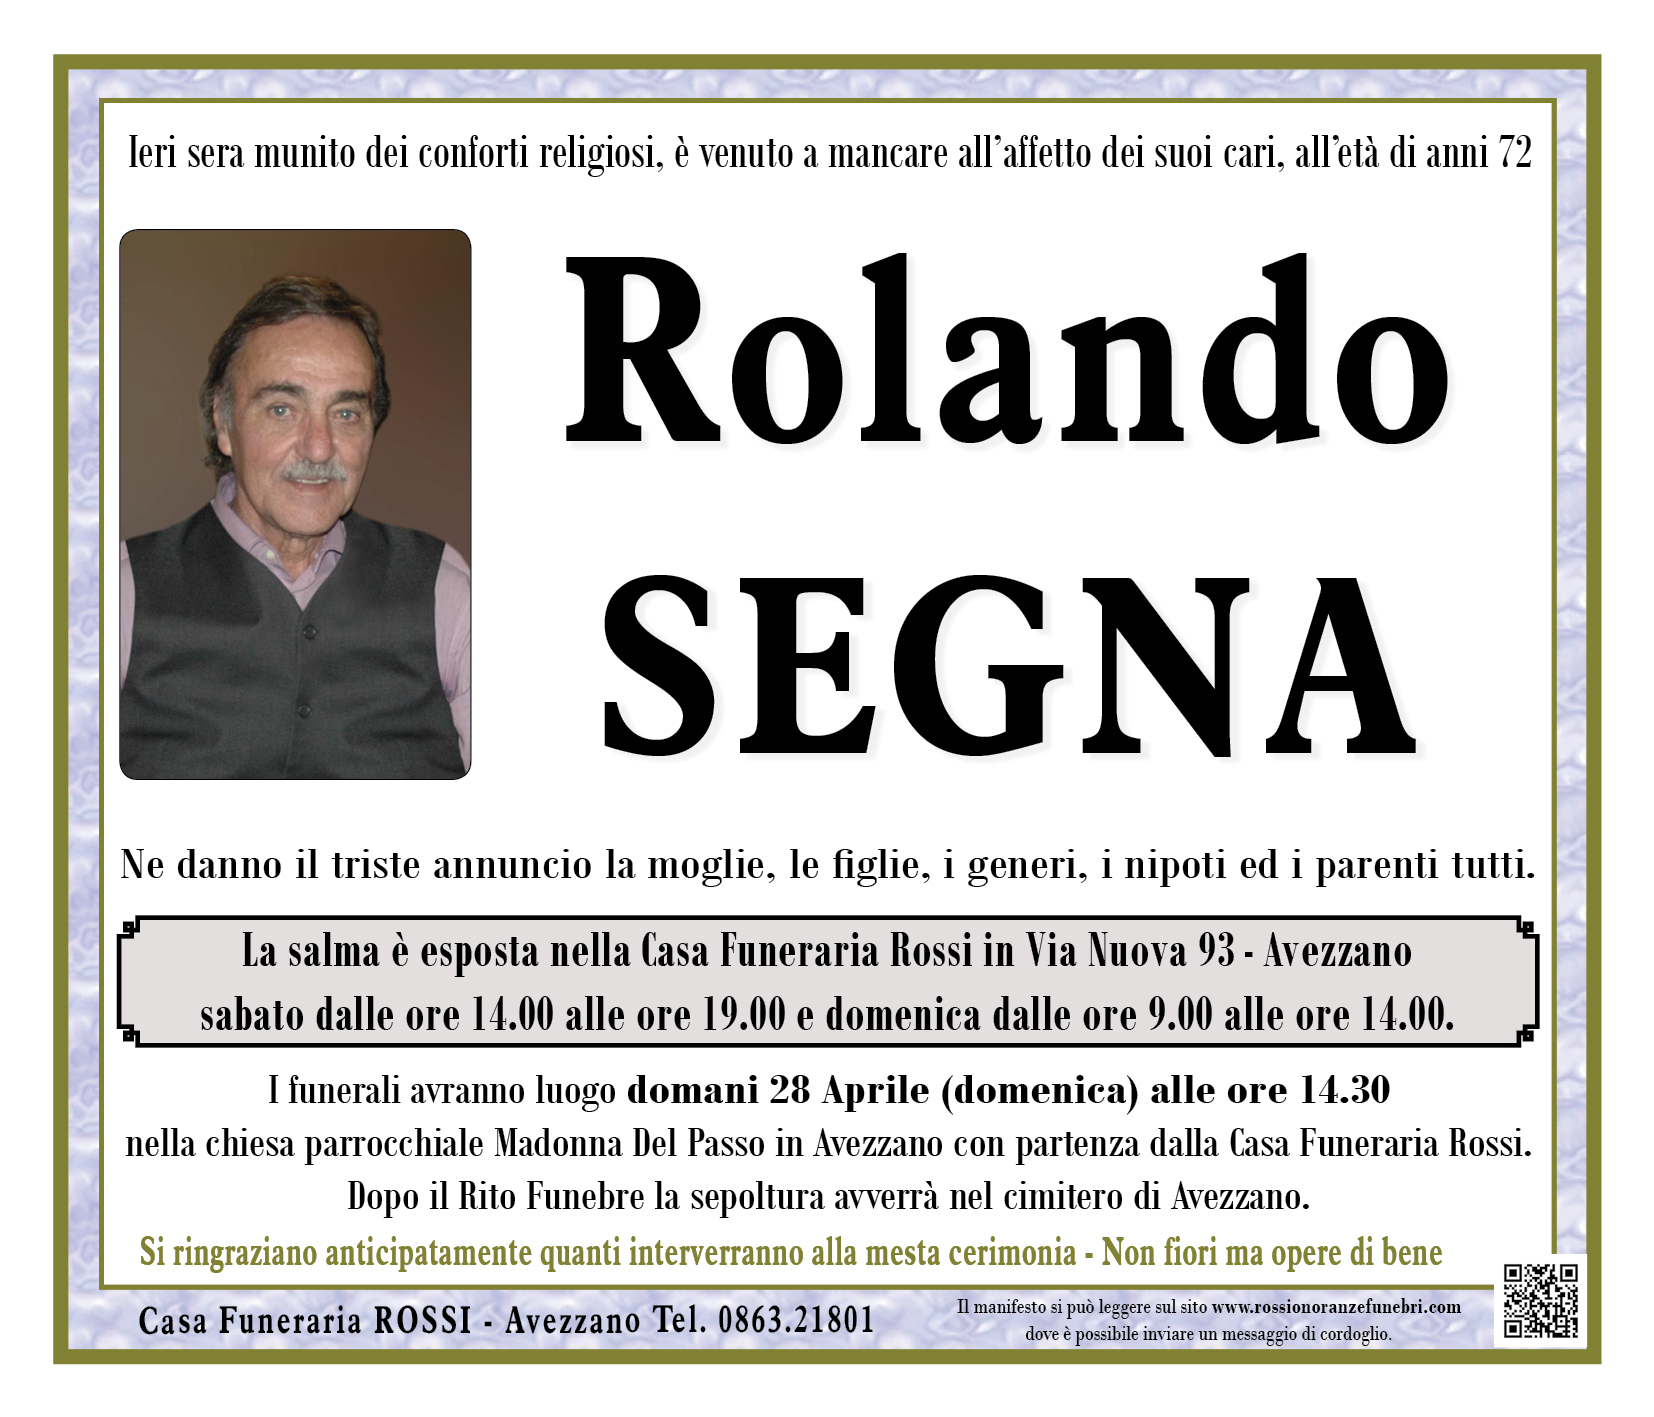 Rolando Segna